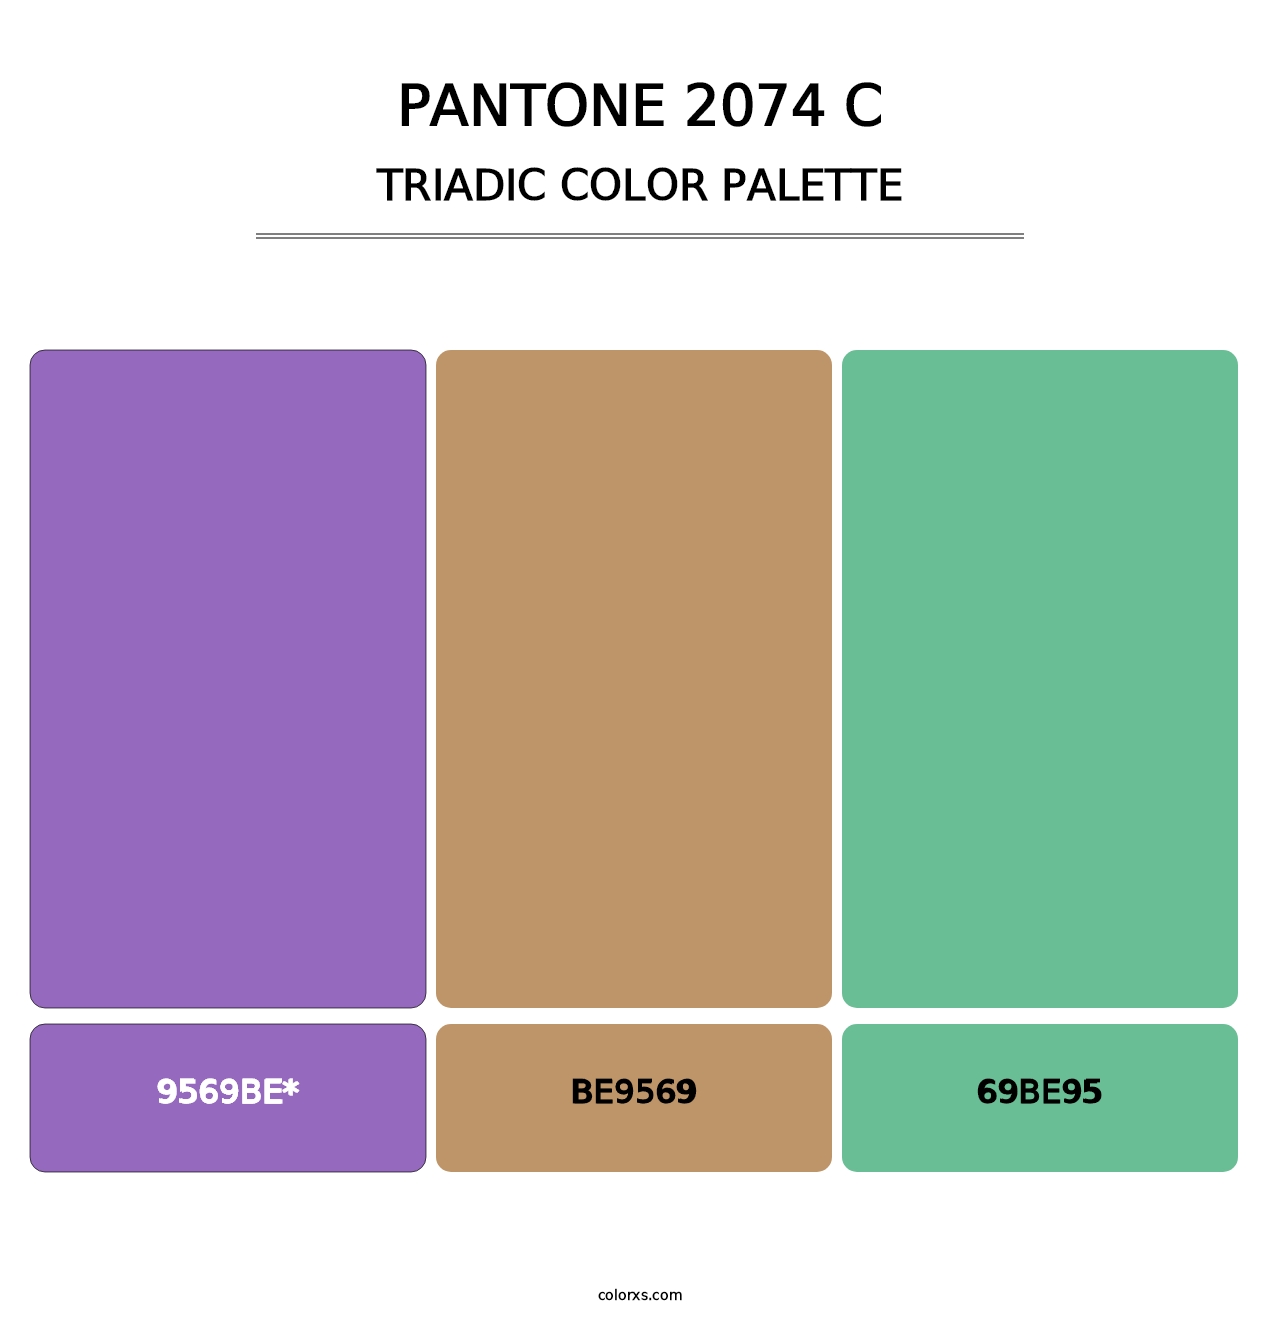 PANTONE 2074 C - Triadic Color Palette